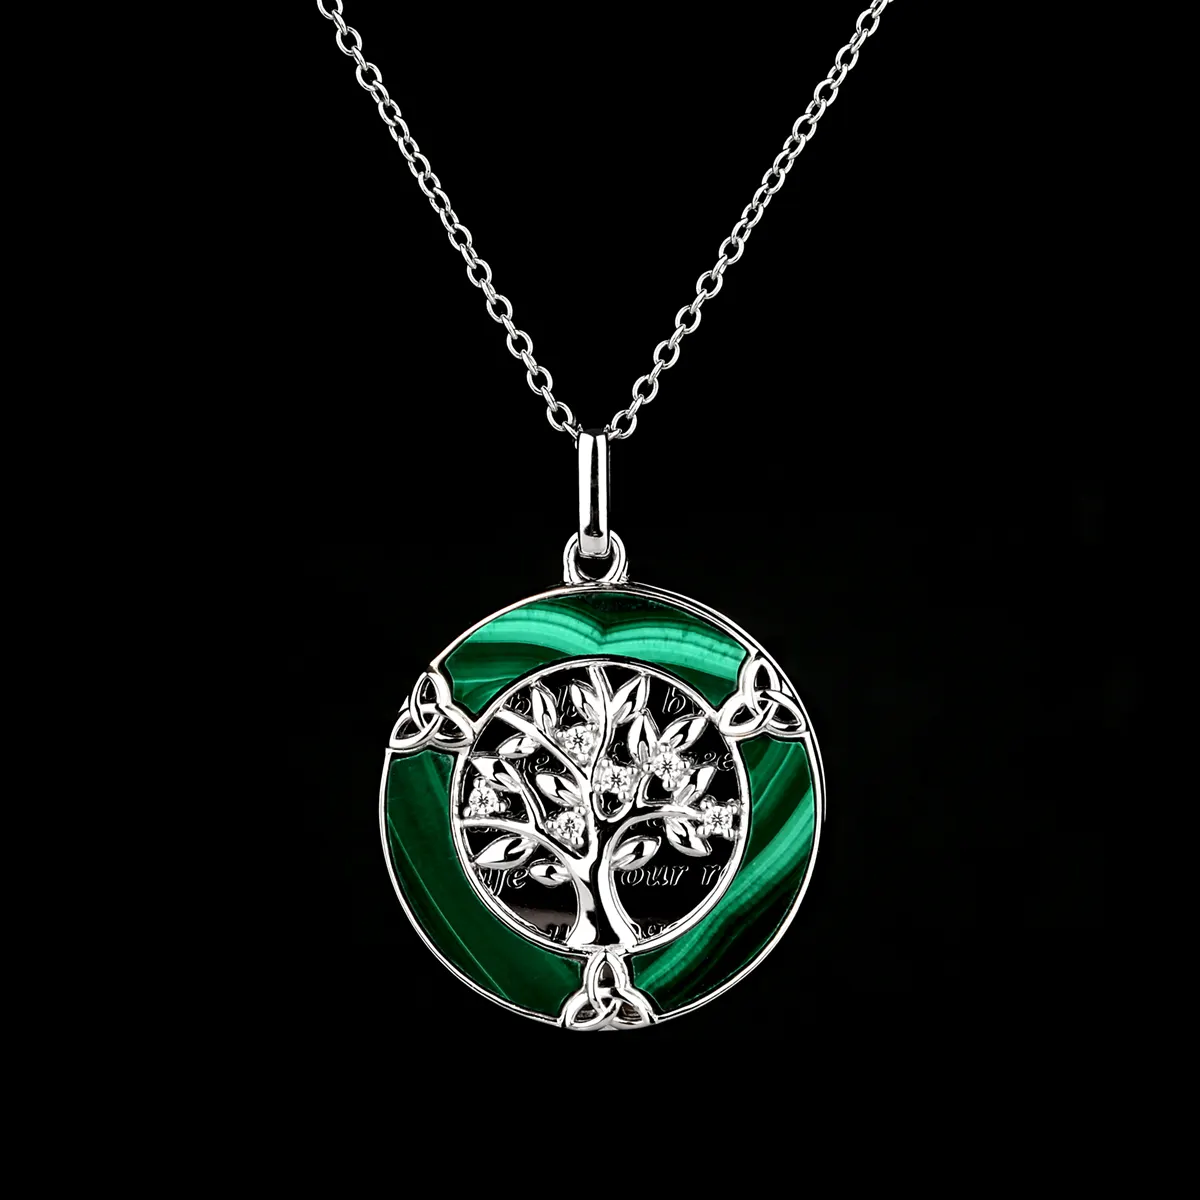 Family Tree of Life - Keltische Lebensbaum Kette mit Malachit und Kristall